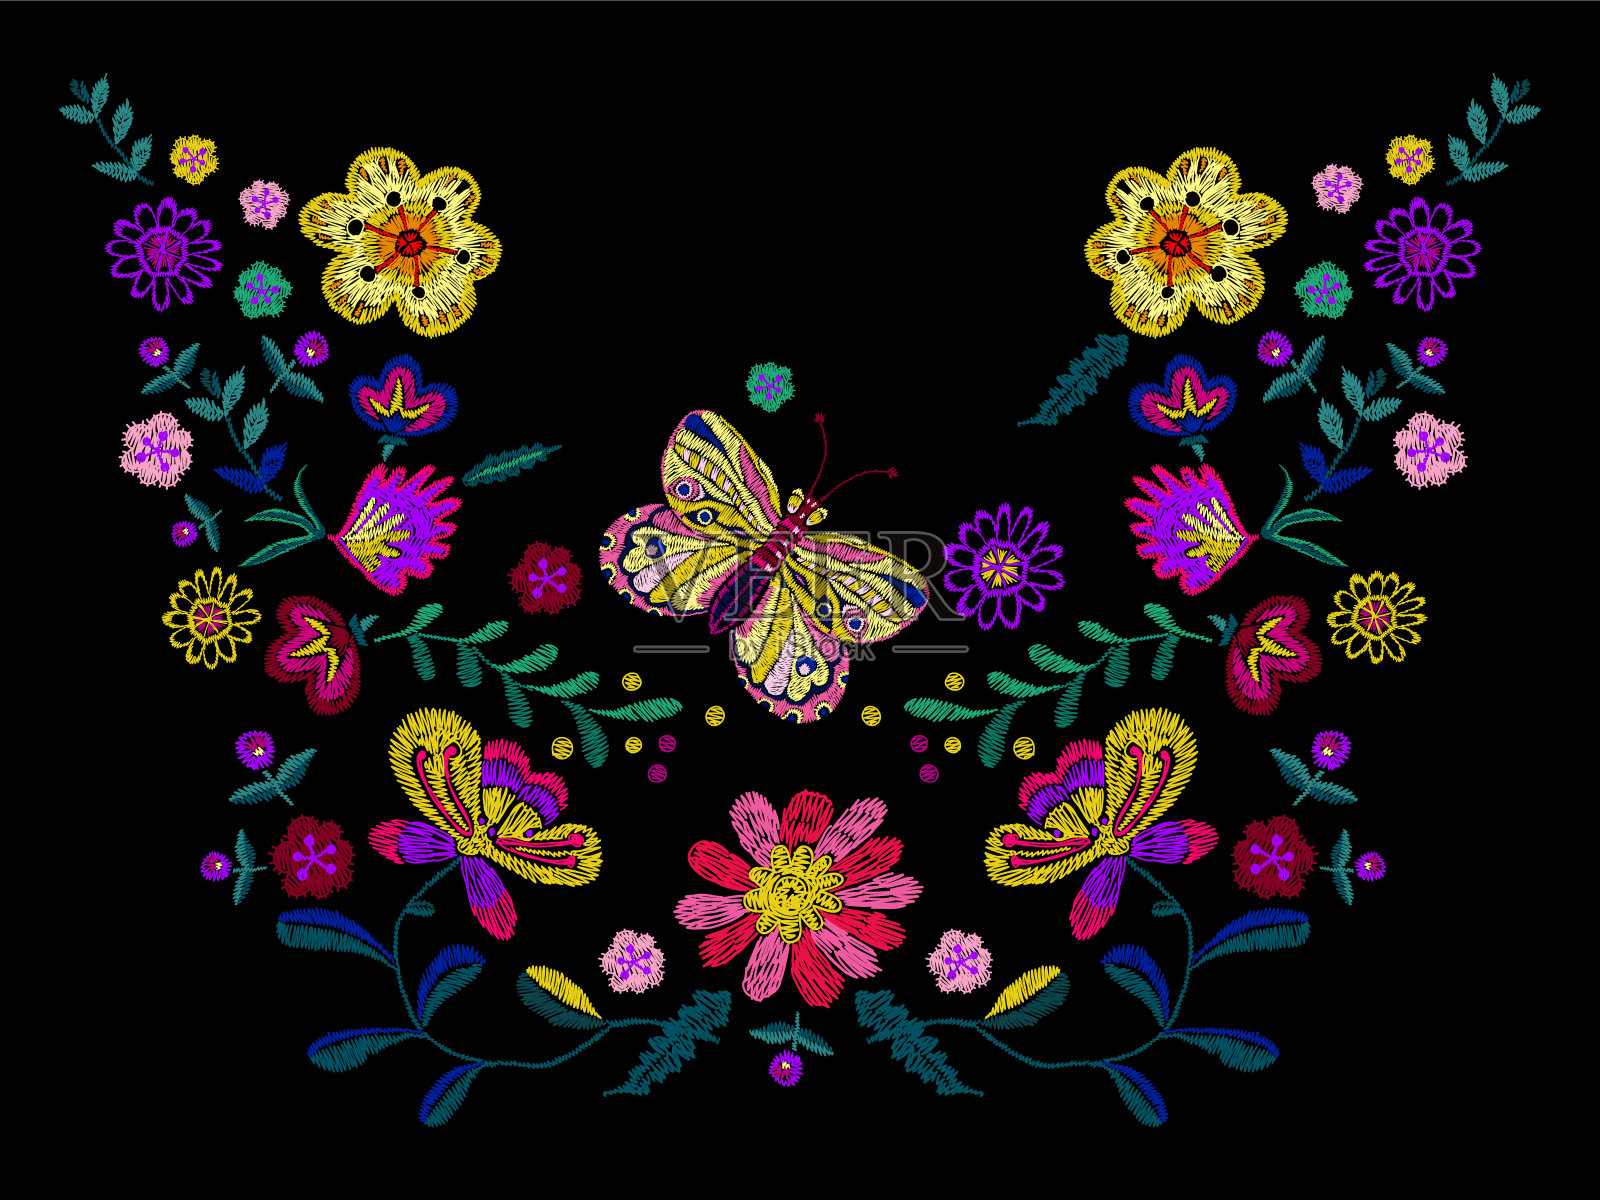 刺绣民族领口图案与简化的花朵和蝴蝶。插画图片素材